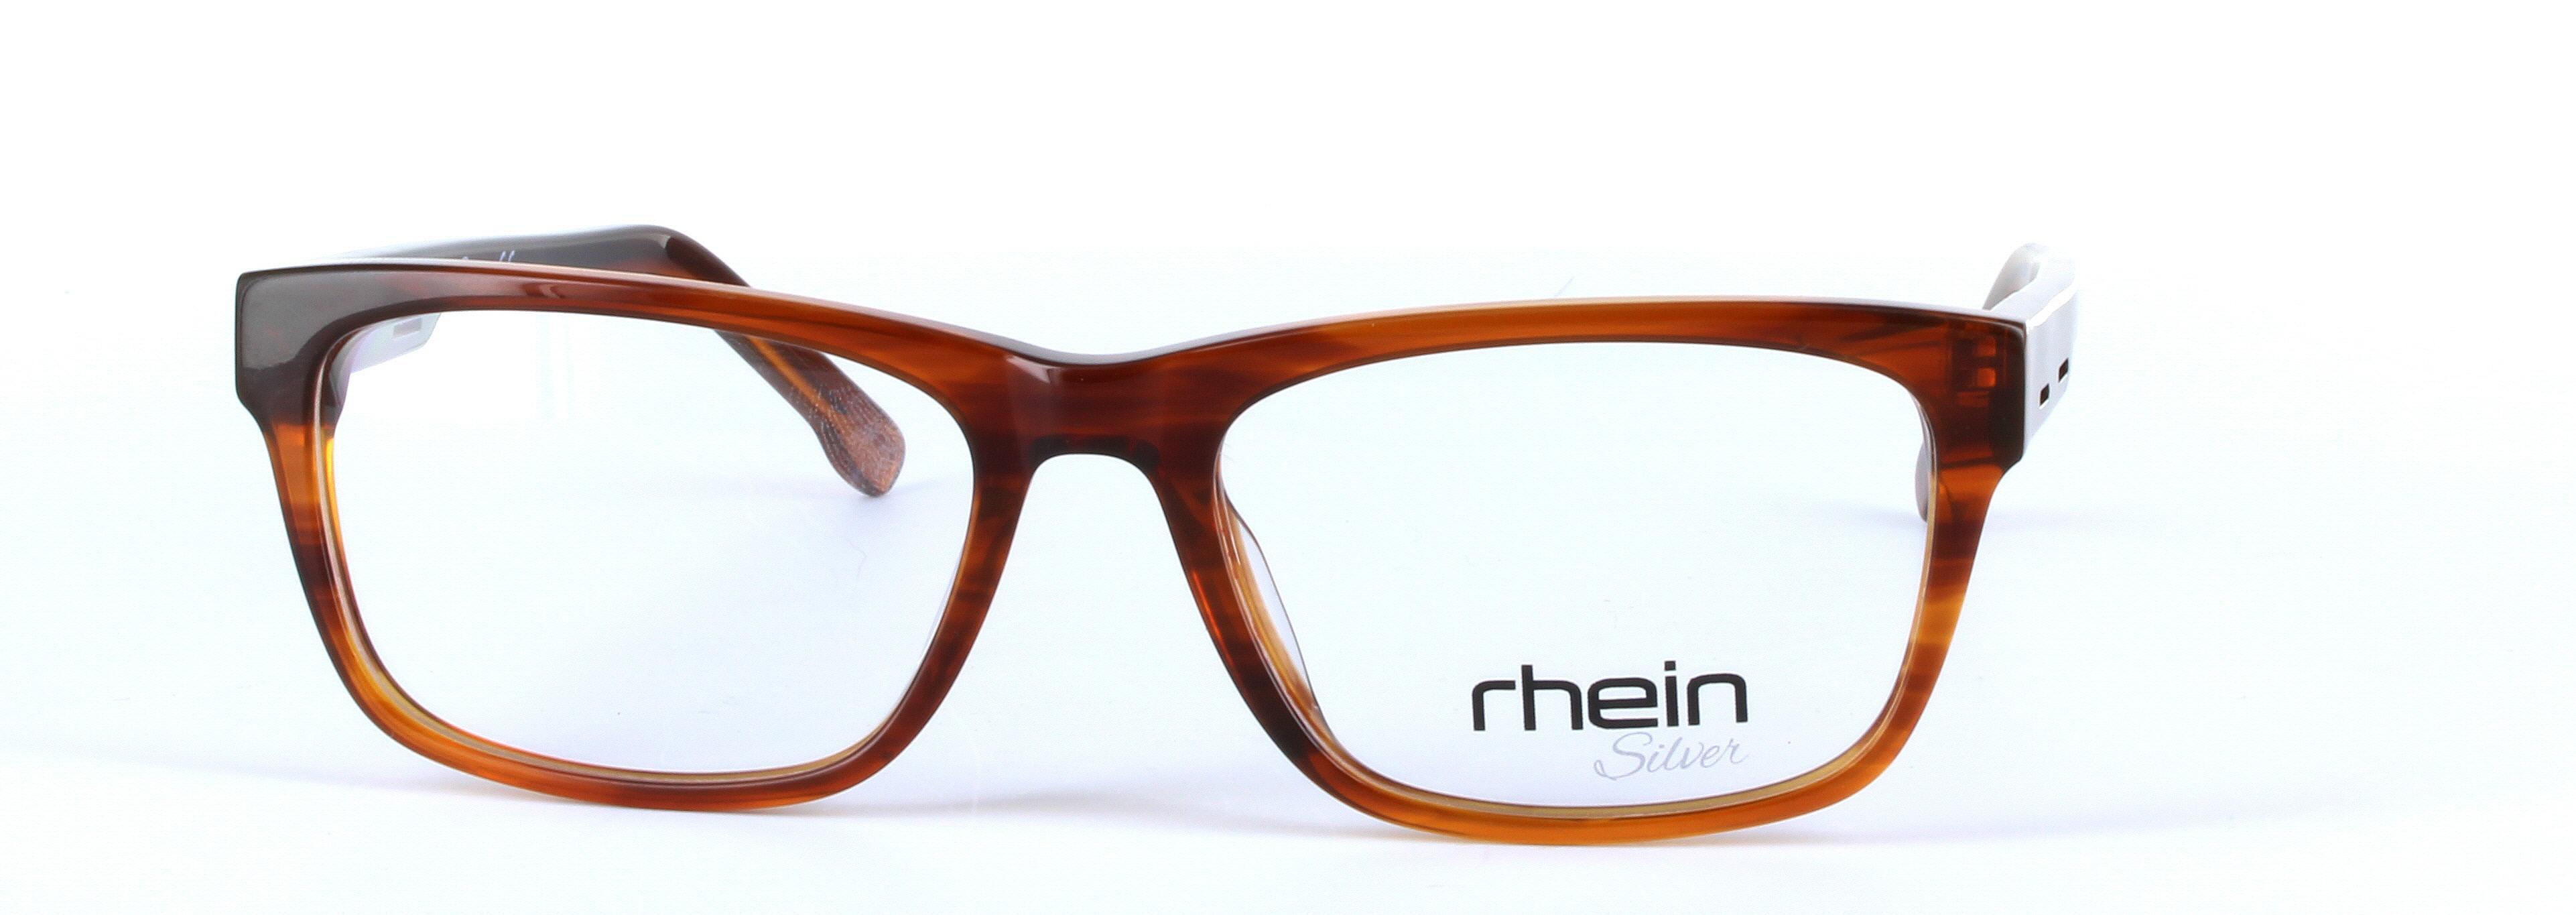 Cygnus Brown Full Rim Rectangular Plastic Glasses - Image View 5